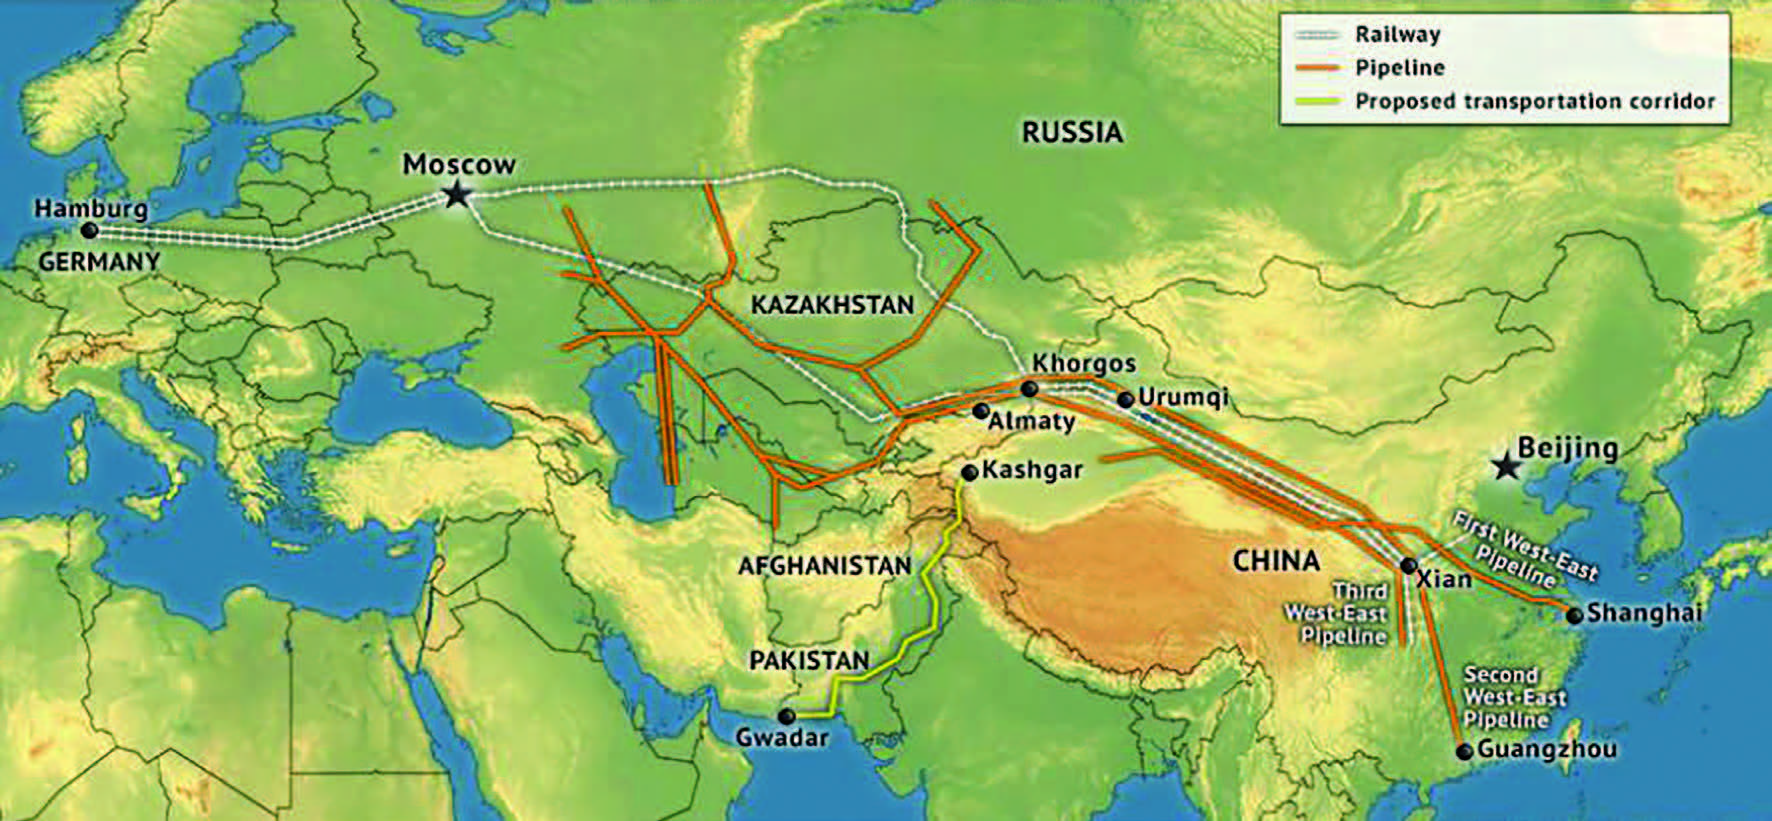 Çin ve Orta Asya bölgeleri boru hattı, demiryolu ve ulaştırma k oridorunu gösteren harita.